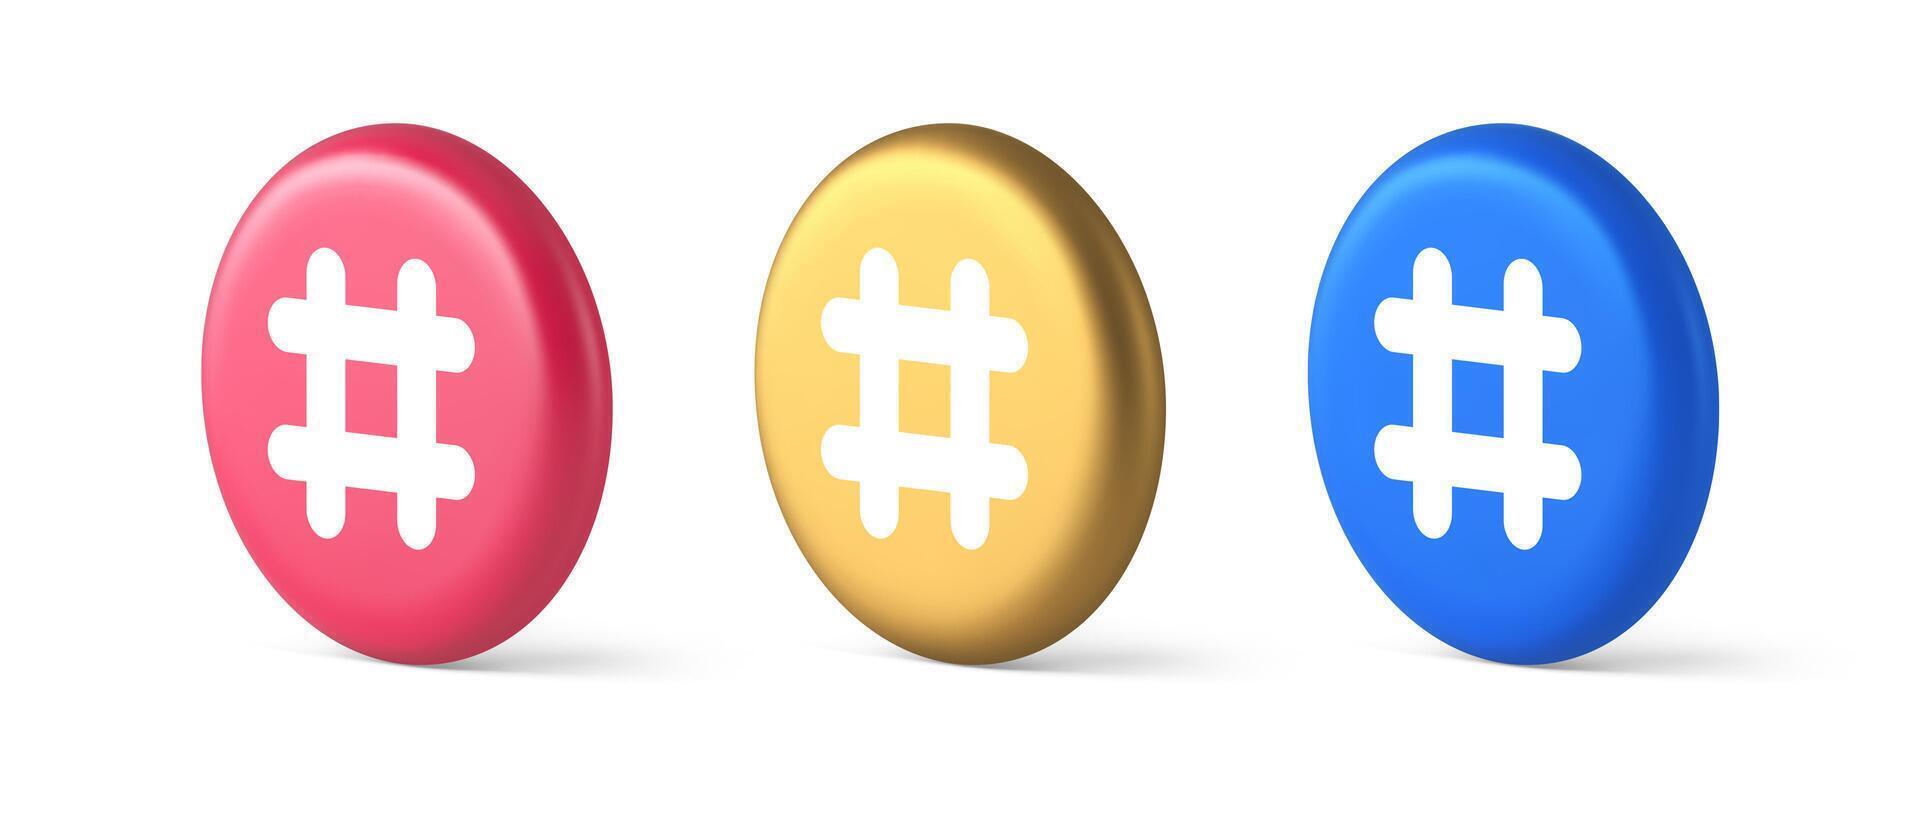 hashtag botão social rede meios de comunicação comunicação símbolo Internet mensagem chave 3d isométrico círculo ícone vetor